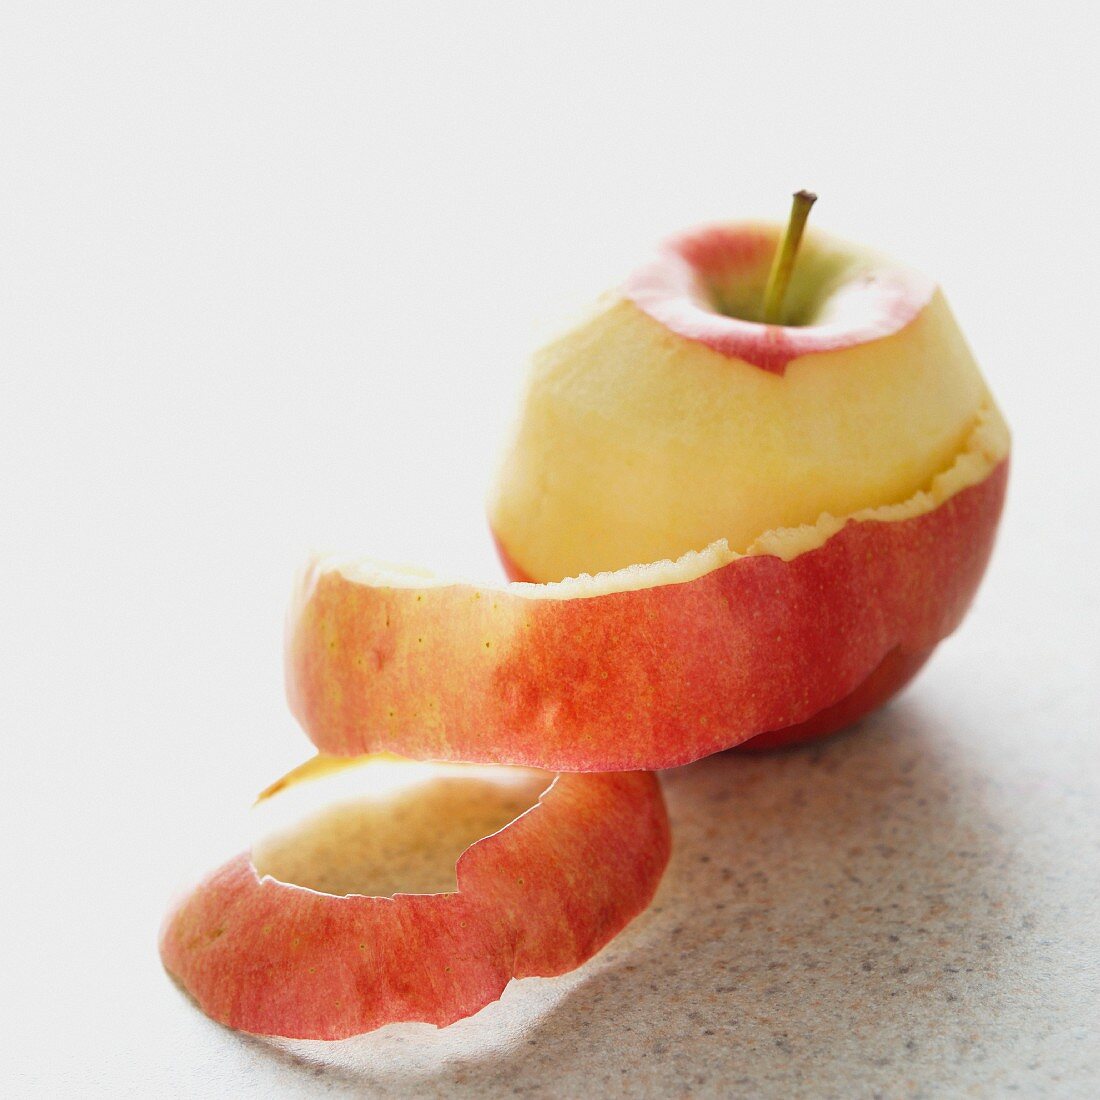 A half-peeled apple